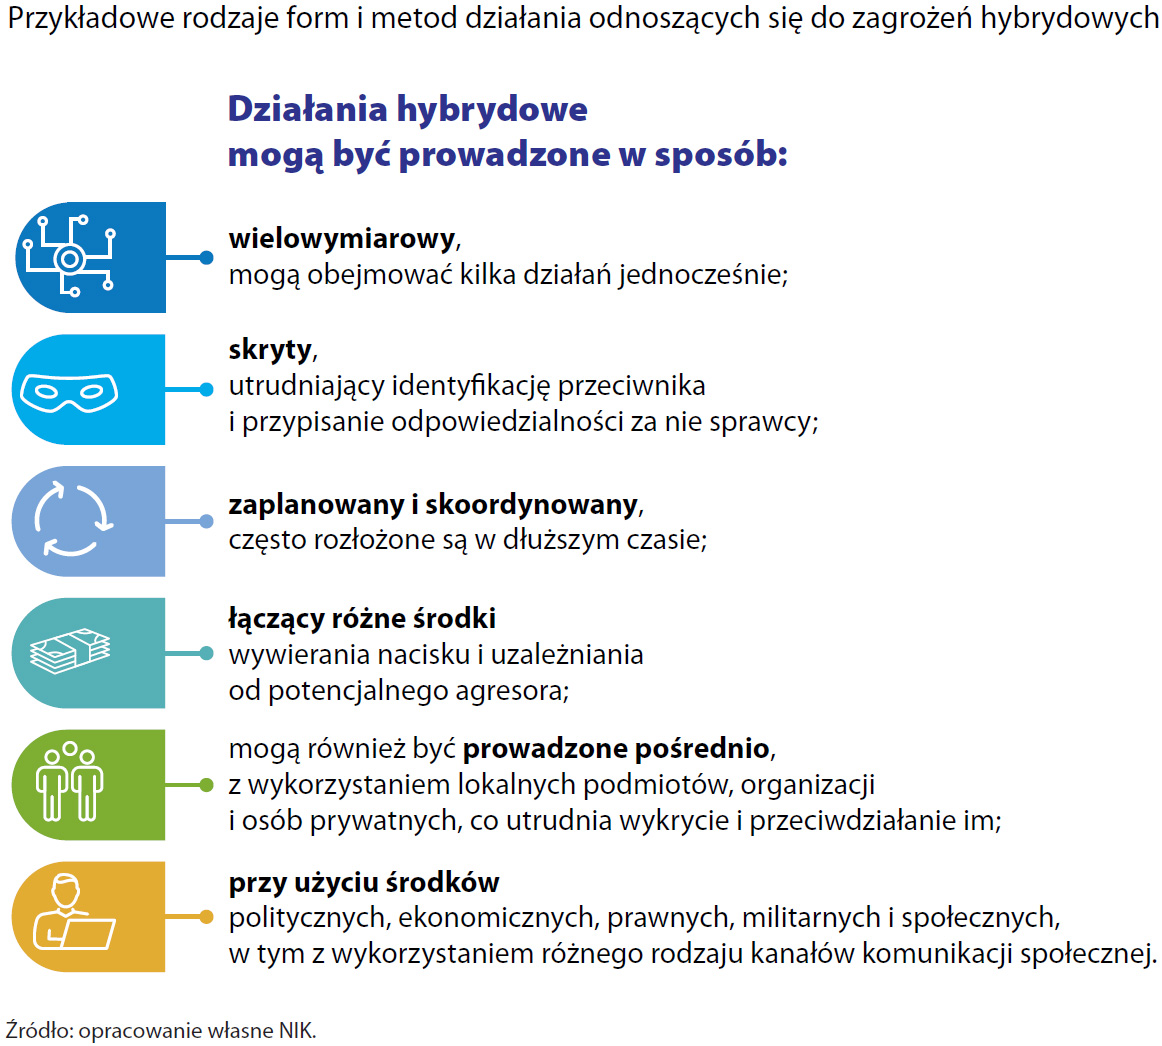 Przykładowe rodzaje form i metod działania odnoszących się do zagrożeń hybrydowych (opis grafiki poniżej)